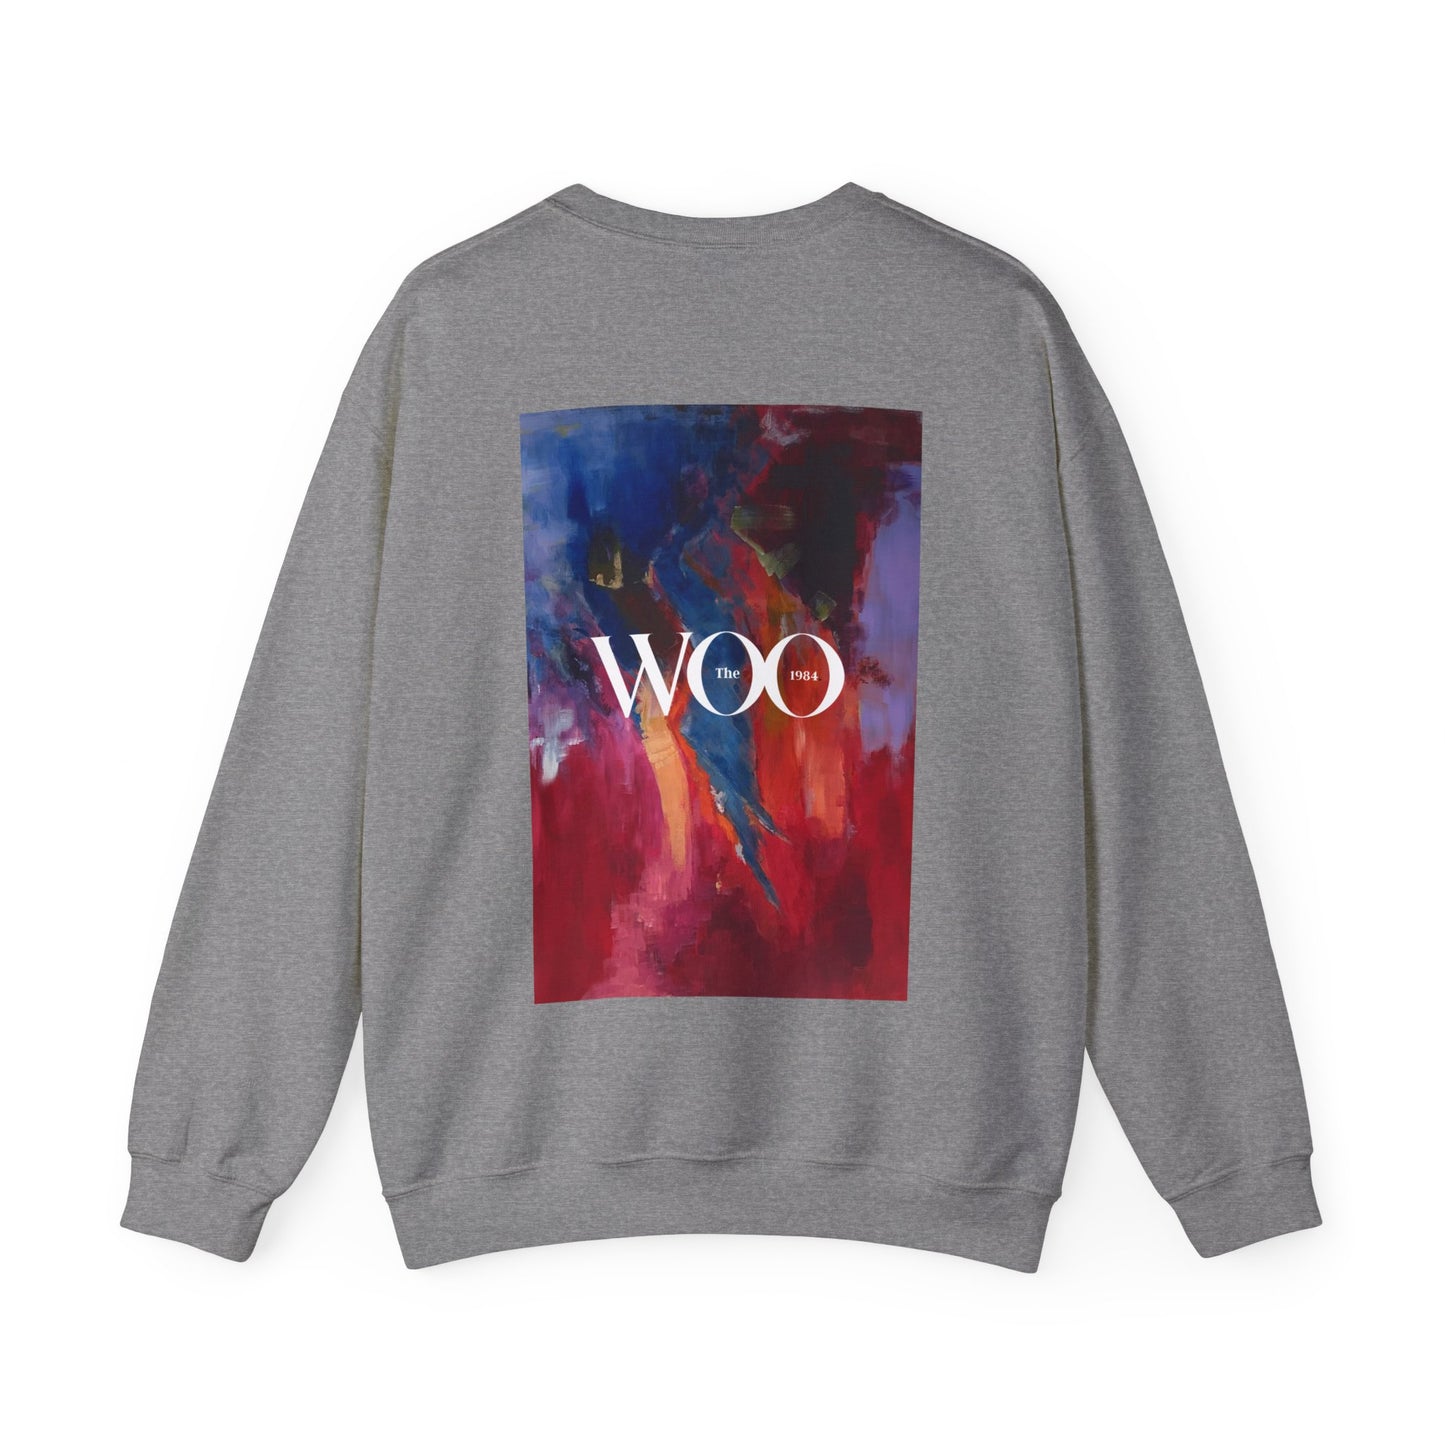 SLOTH - Woo sweatshirt